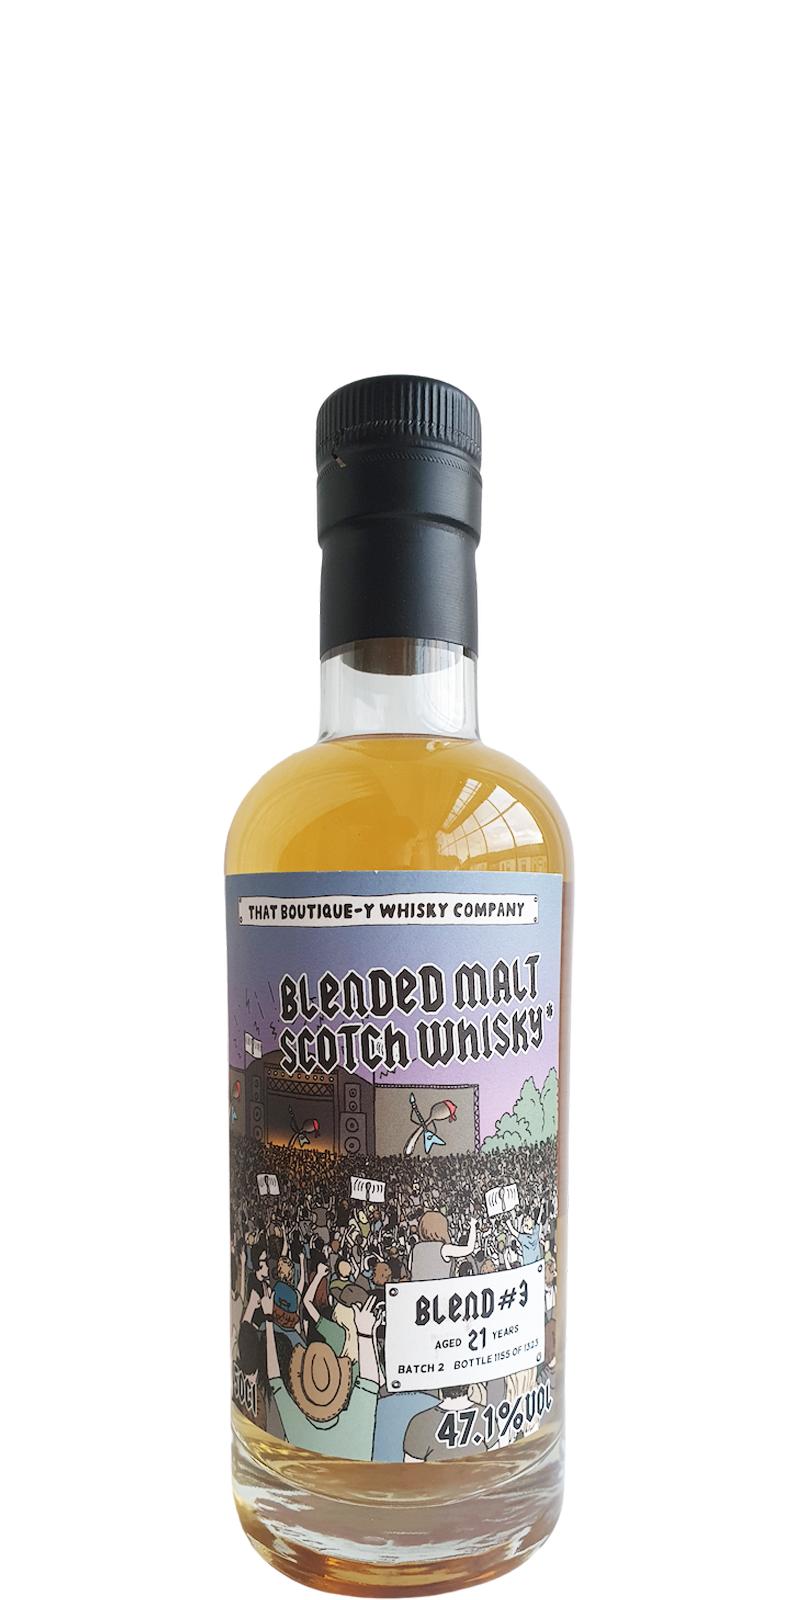 Blended Malt Scotch Whisky #3 TBWC Batch 2 47.1% 500ml